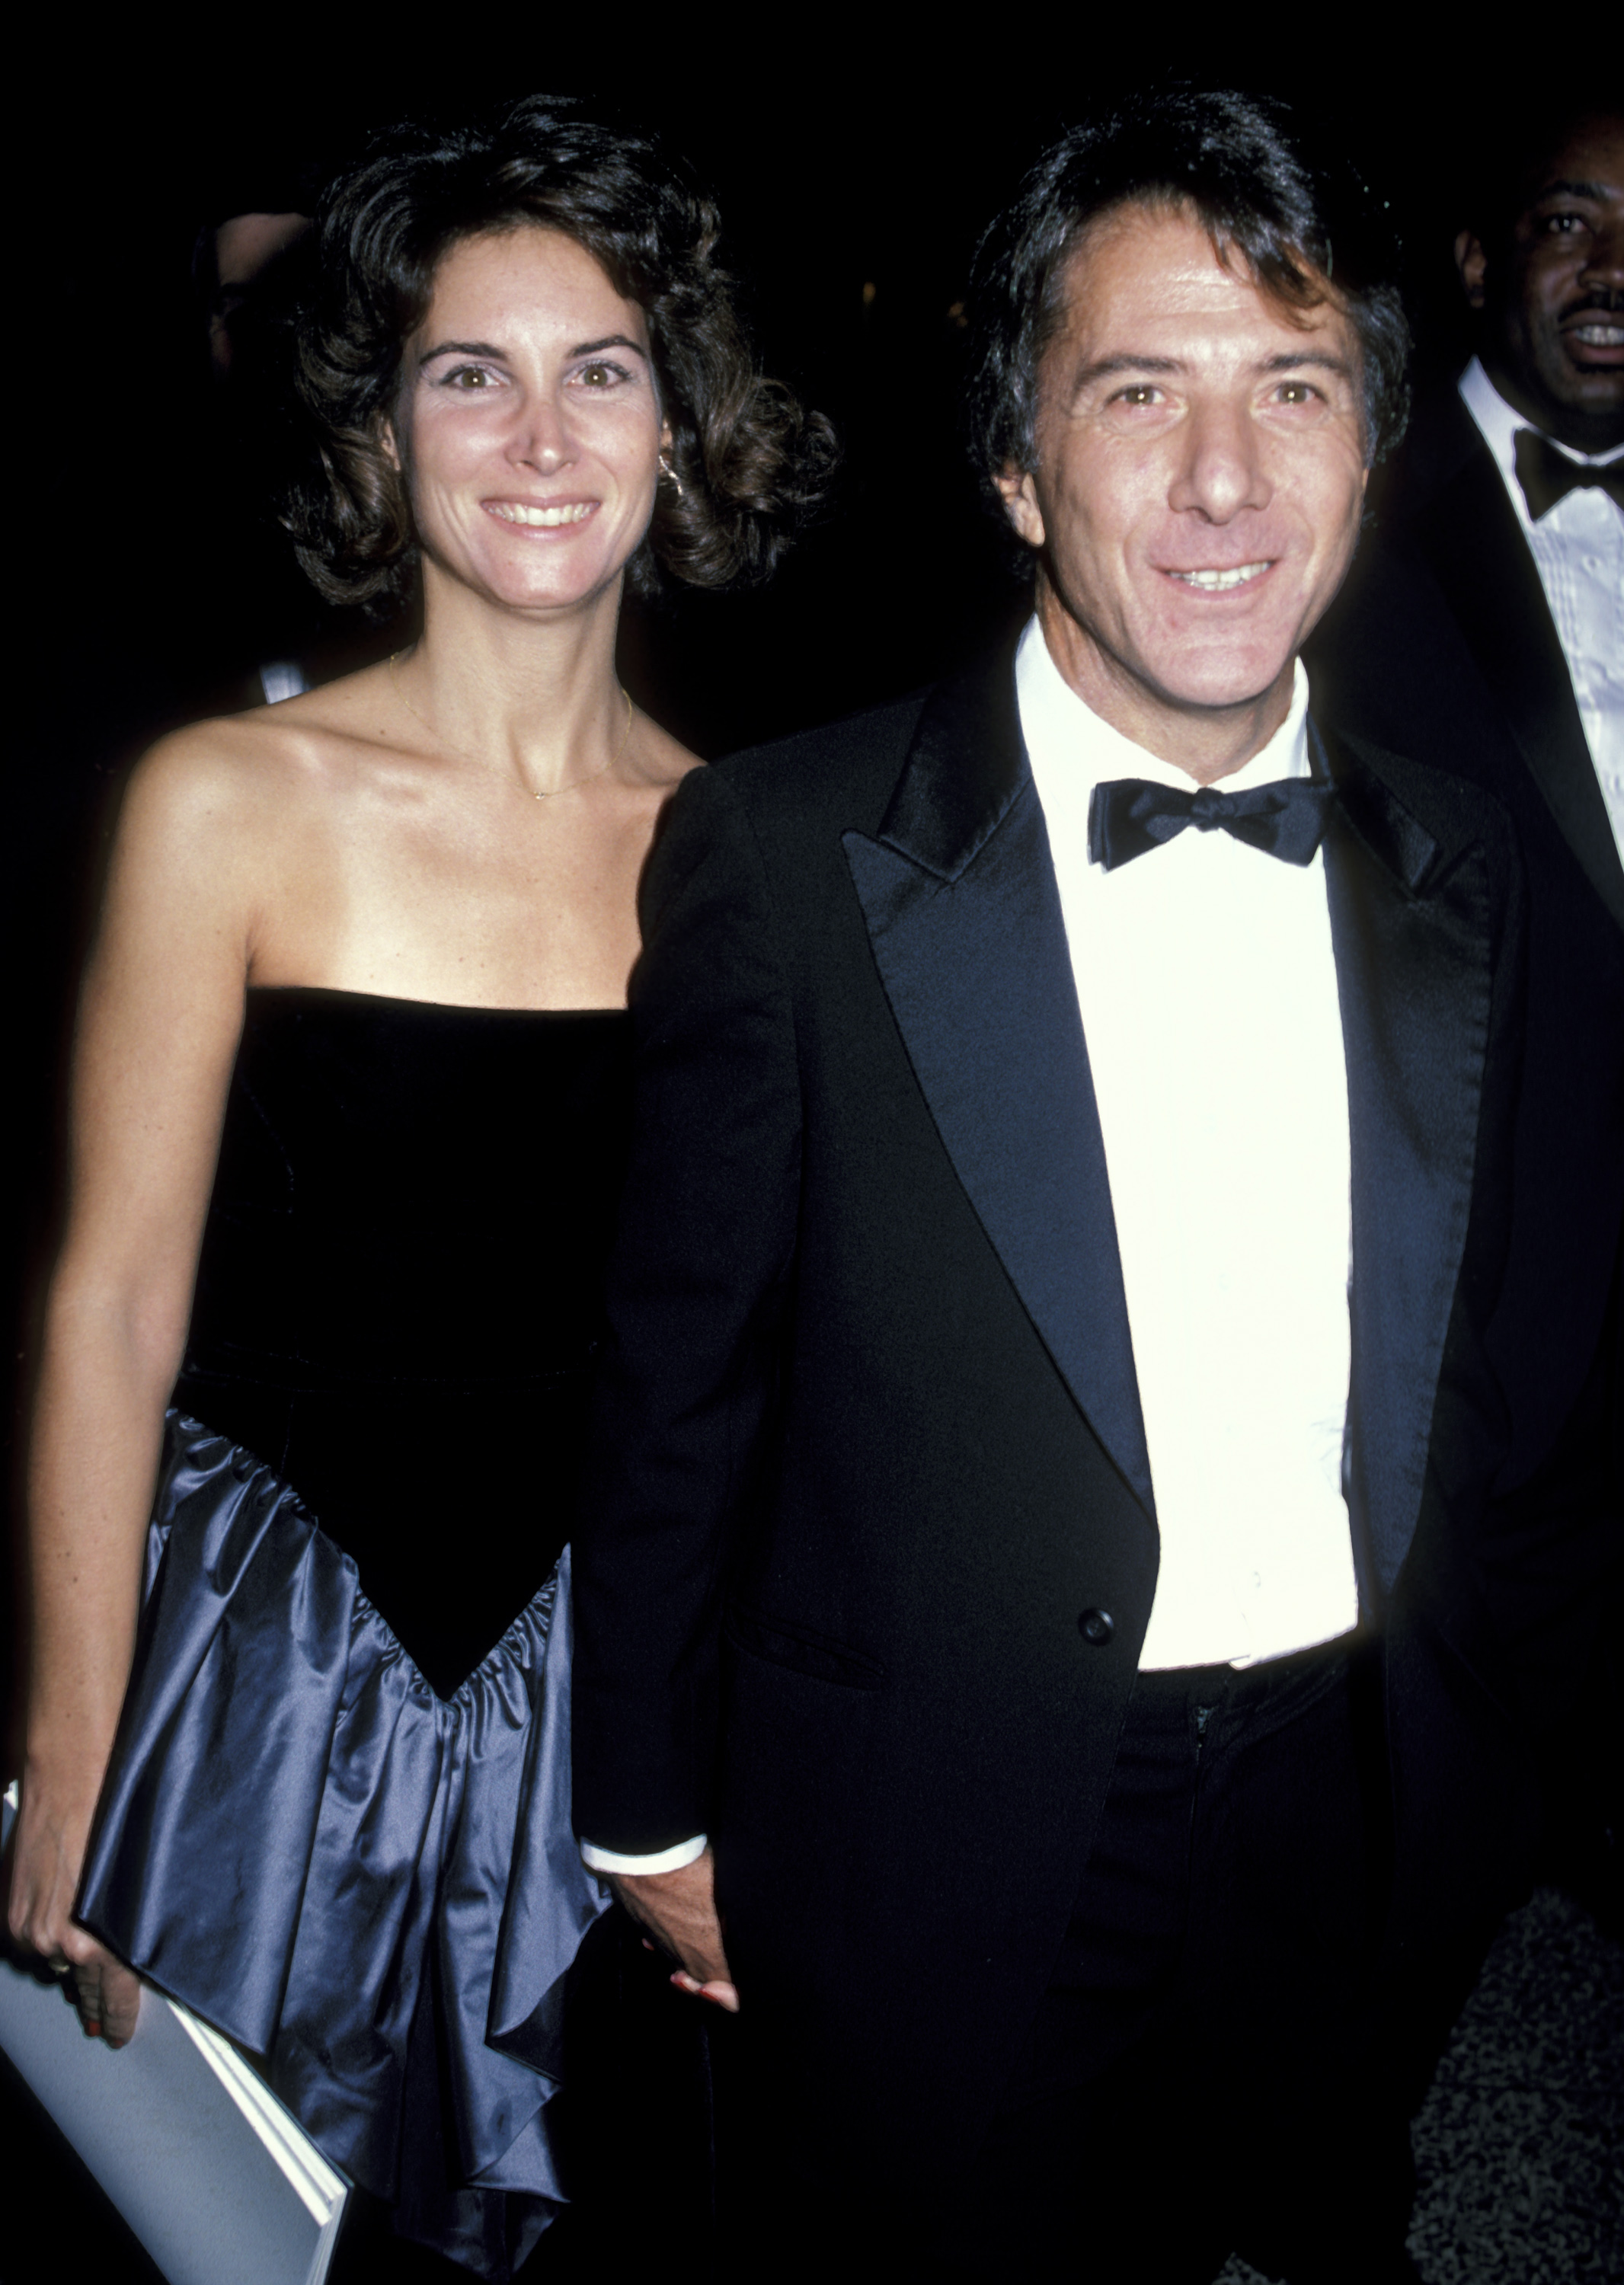 La femme et l'acteur lors de la première de "The Mission" - after party à New York le 30 octobre 1986. | Source : Getty Images